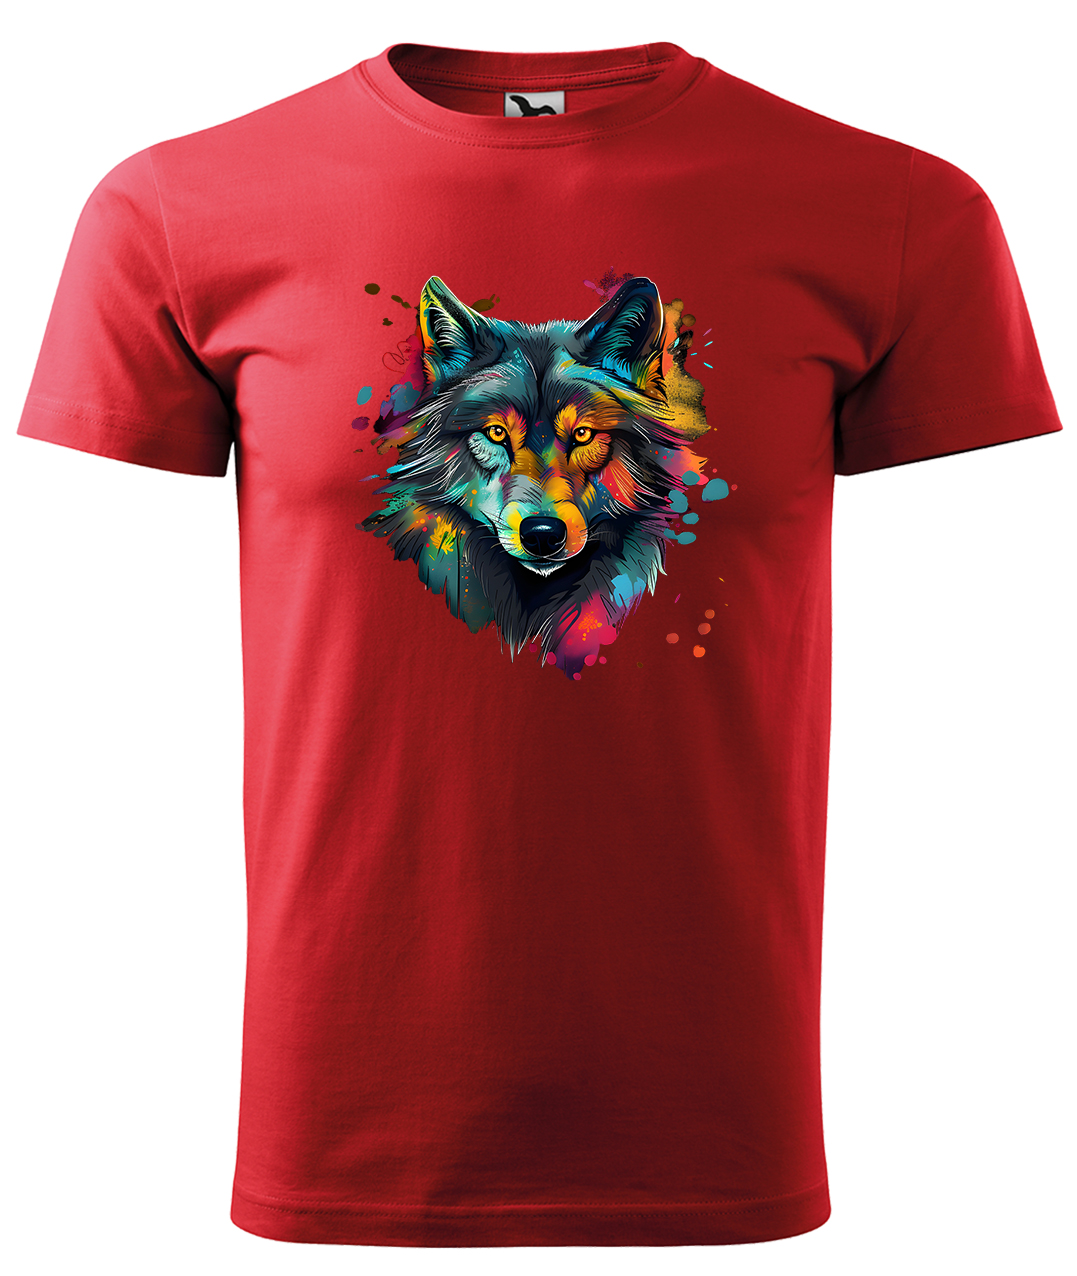 Dětské tričko s vlkem - Malovaný vlk Velikost: 6 let / 122 cm, Barva: Červená (07), Délka rukávu: Krátký rukáv